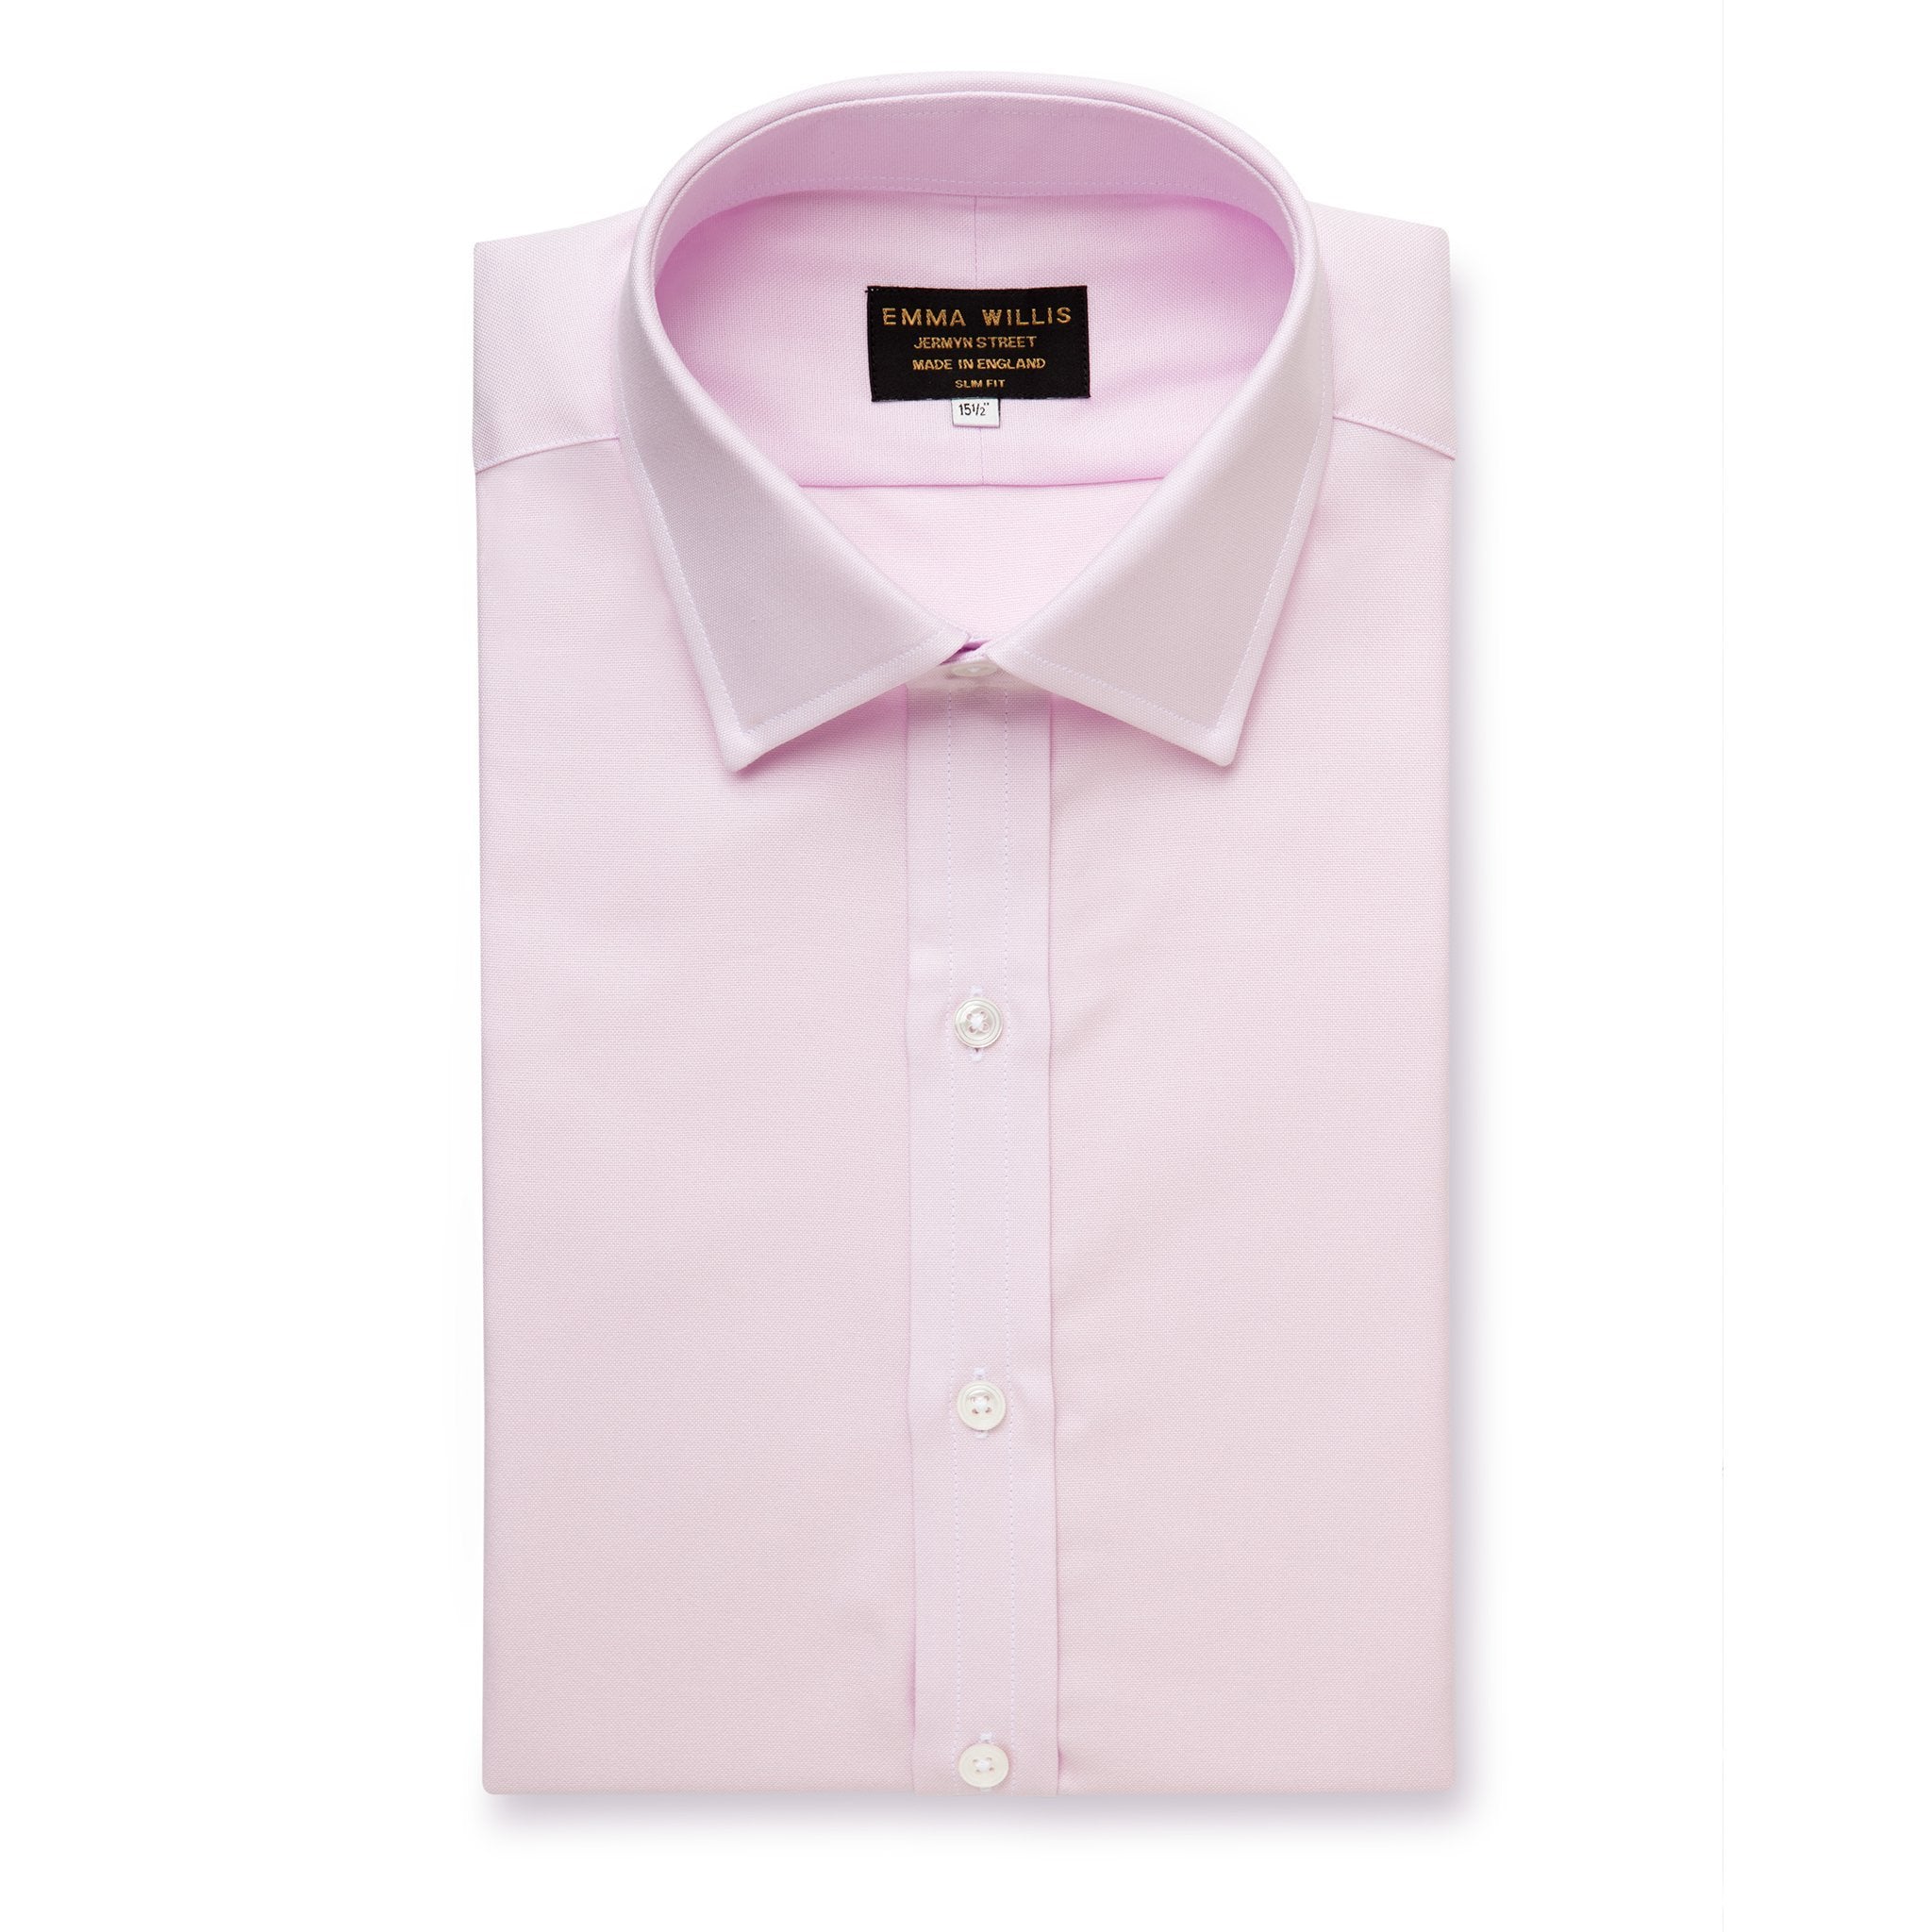 Pink Oxford Cotton Shirt - Bespoke freeshipping - Emma Willis